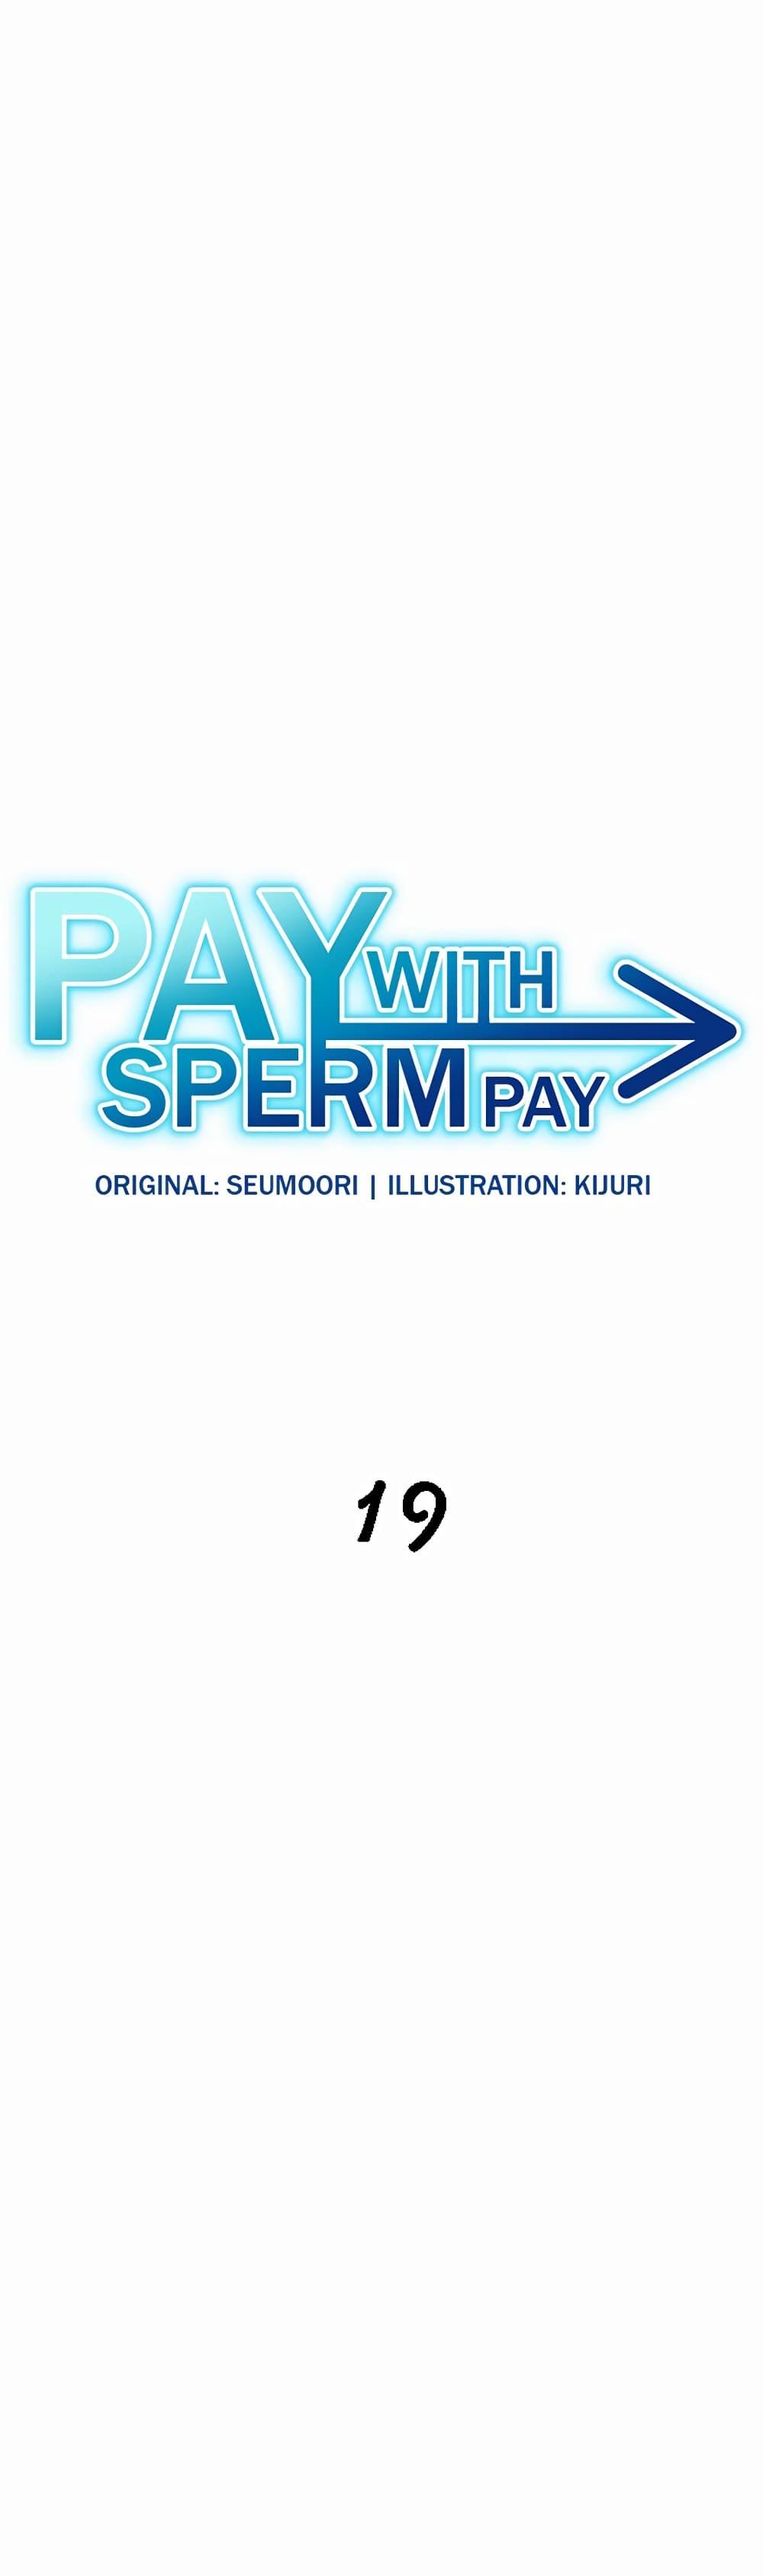 Doujin-Lc- อ่าน โดจิน มังฮวา เกาหลี ญี่ปุ่น จีน แปลไทย Pay with Sperm Pay ตอนที่ 1 2 3 4 5 6 7 8 9 10 11 12 13 14 ฟรี ไม่มีโฆษณา อ่าน โดจิน Manhwa เกาหลี ญี่ปุ่น จีน เรามีครบ คัดมาให้เน้นๆ โดจิน 18+ รับประกันความฟินโดย  Doujin Lc